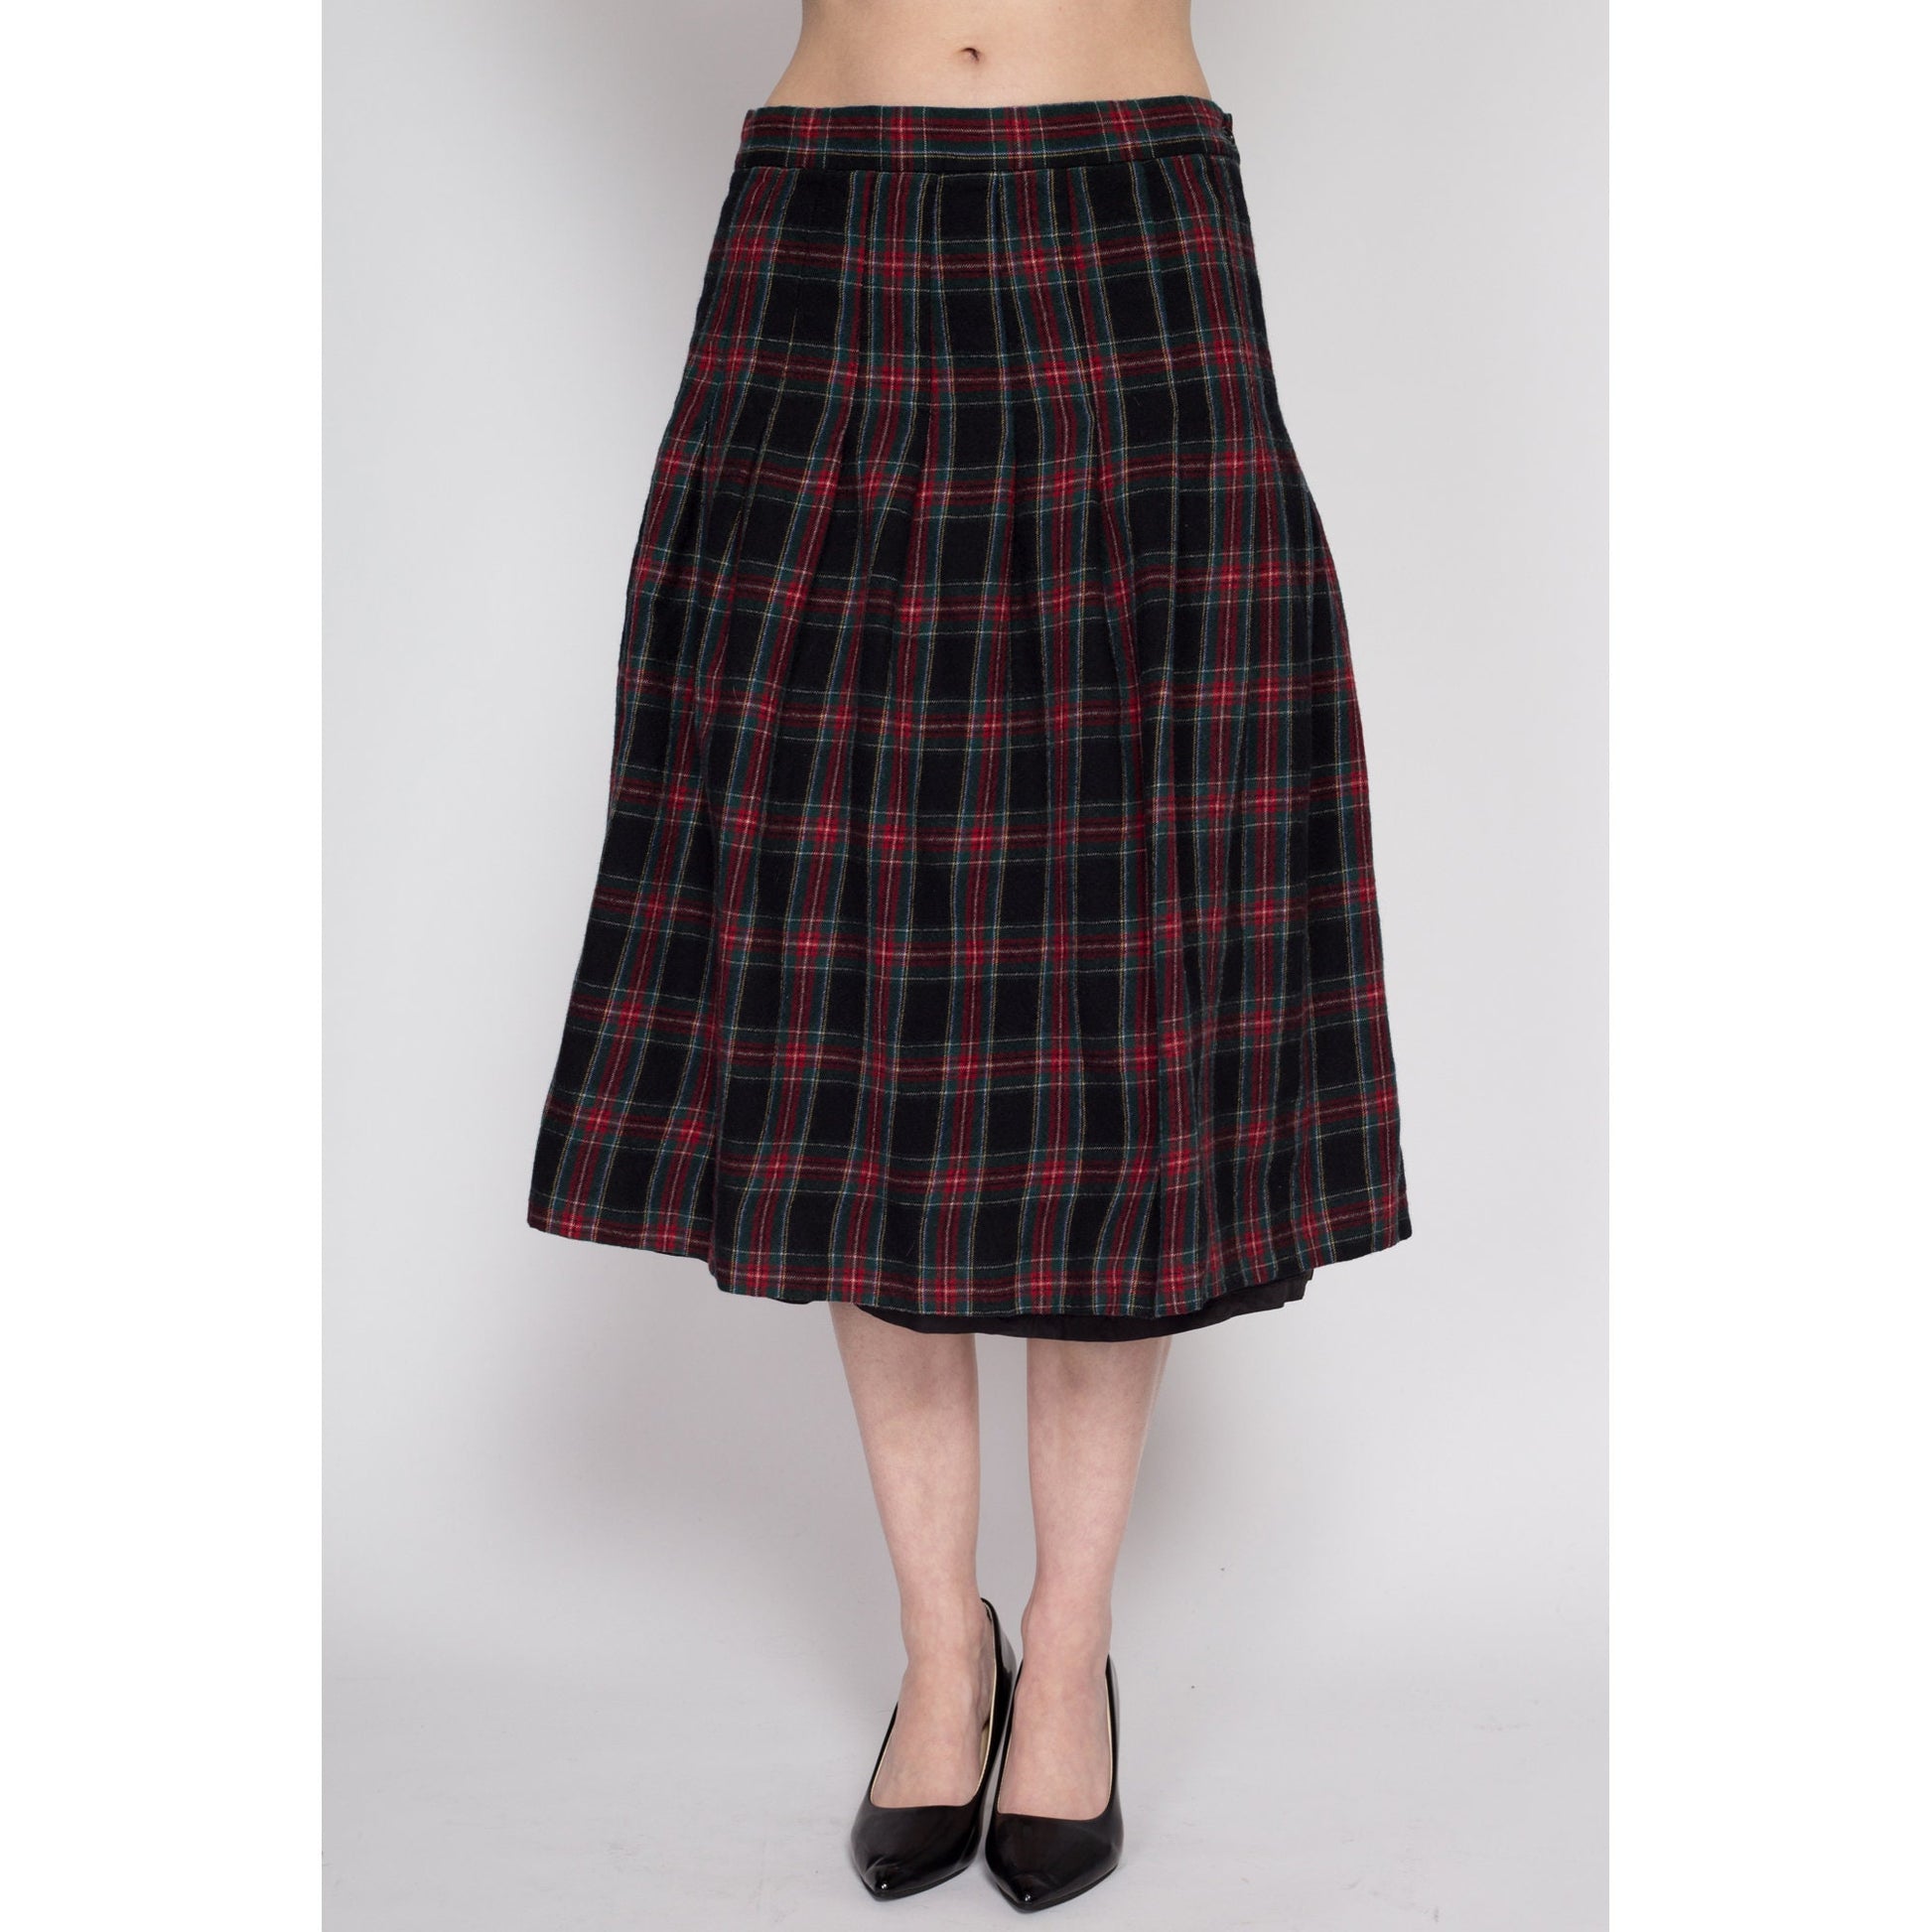 Medium 90s Black & Red Plaid Wool Midi Skirt 29" | Vintage L.L. Bean Pleated High Waisted Preppy Schoolgirl Skirt